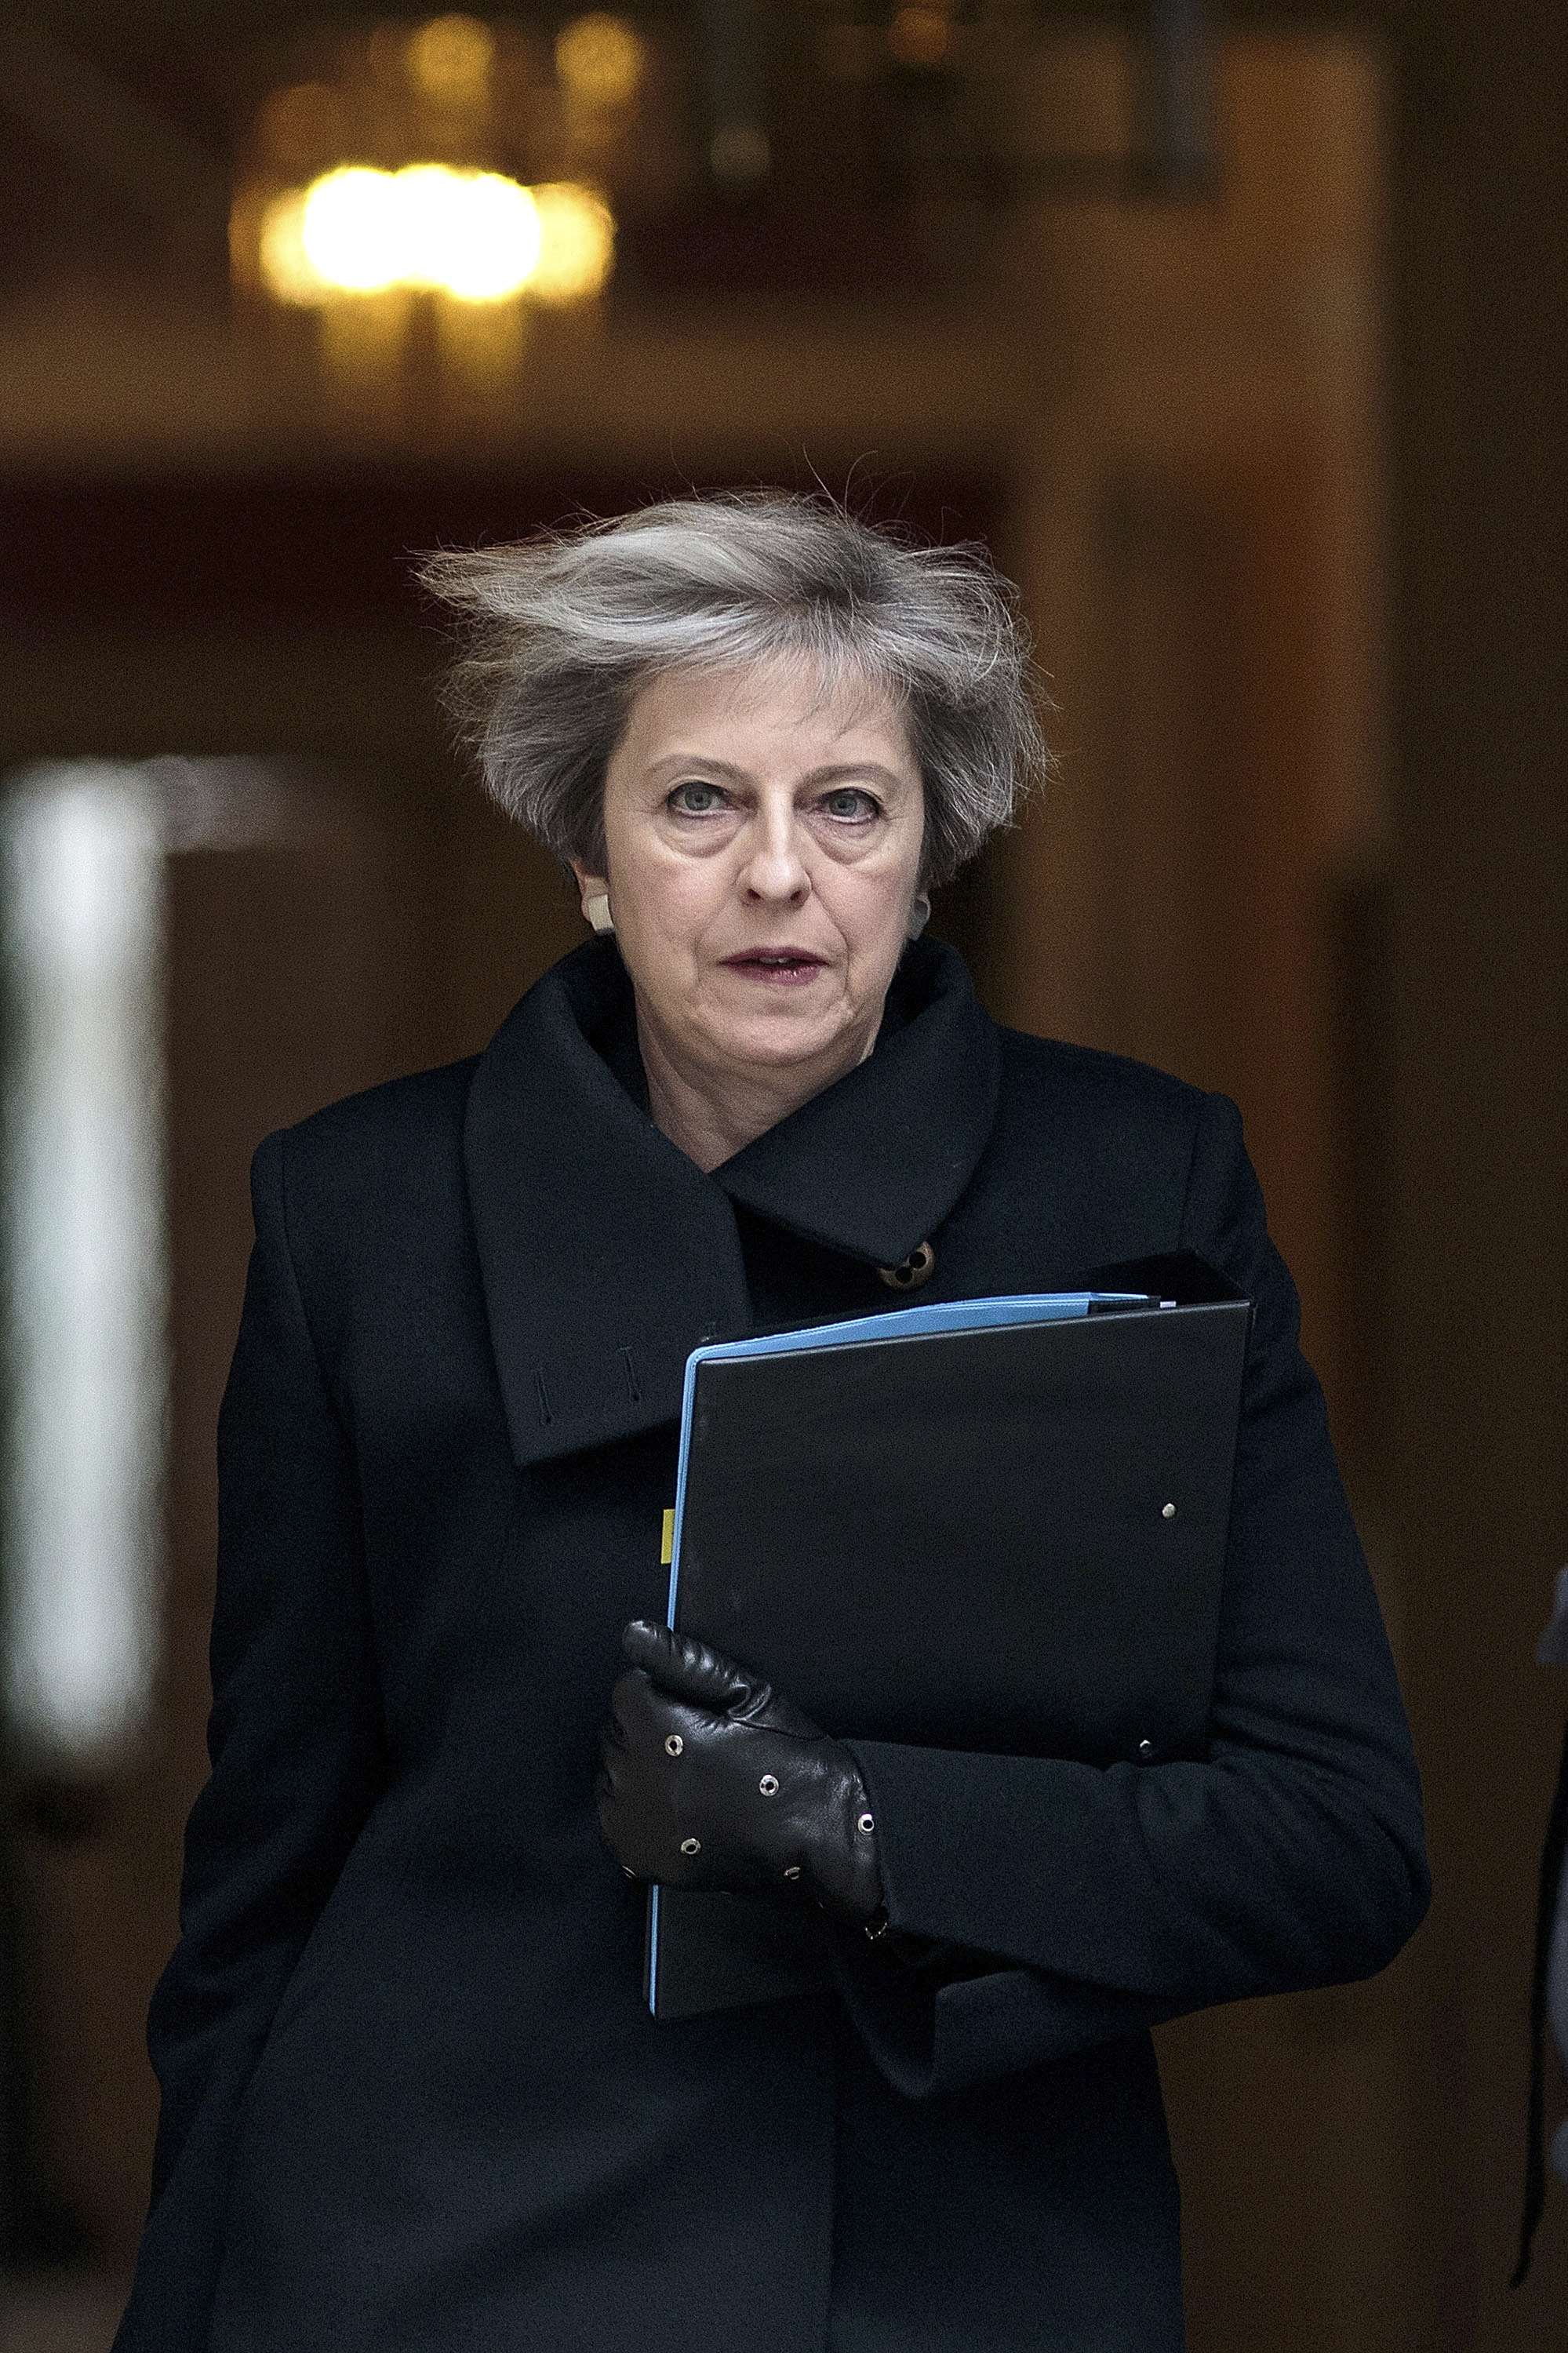 Atacante de Londres es de nacionalidad británica, afirma Theresa May